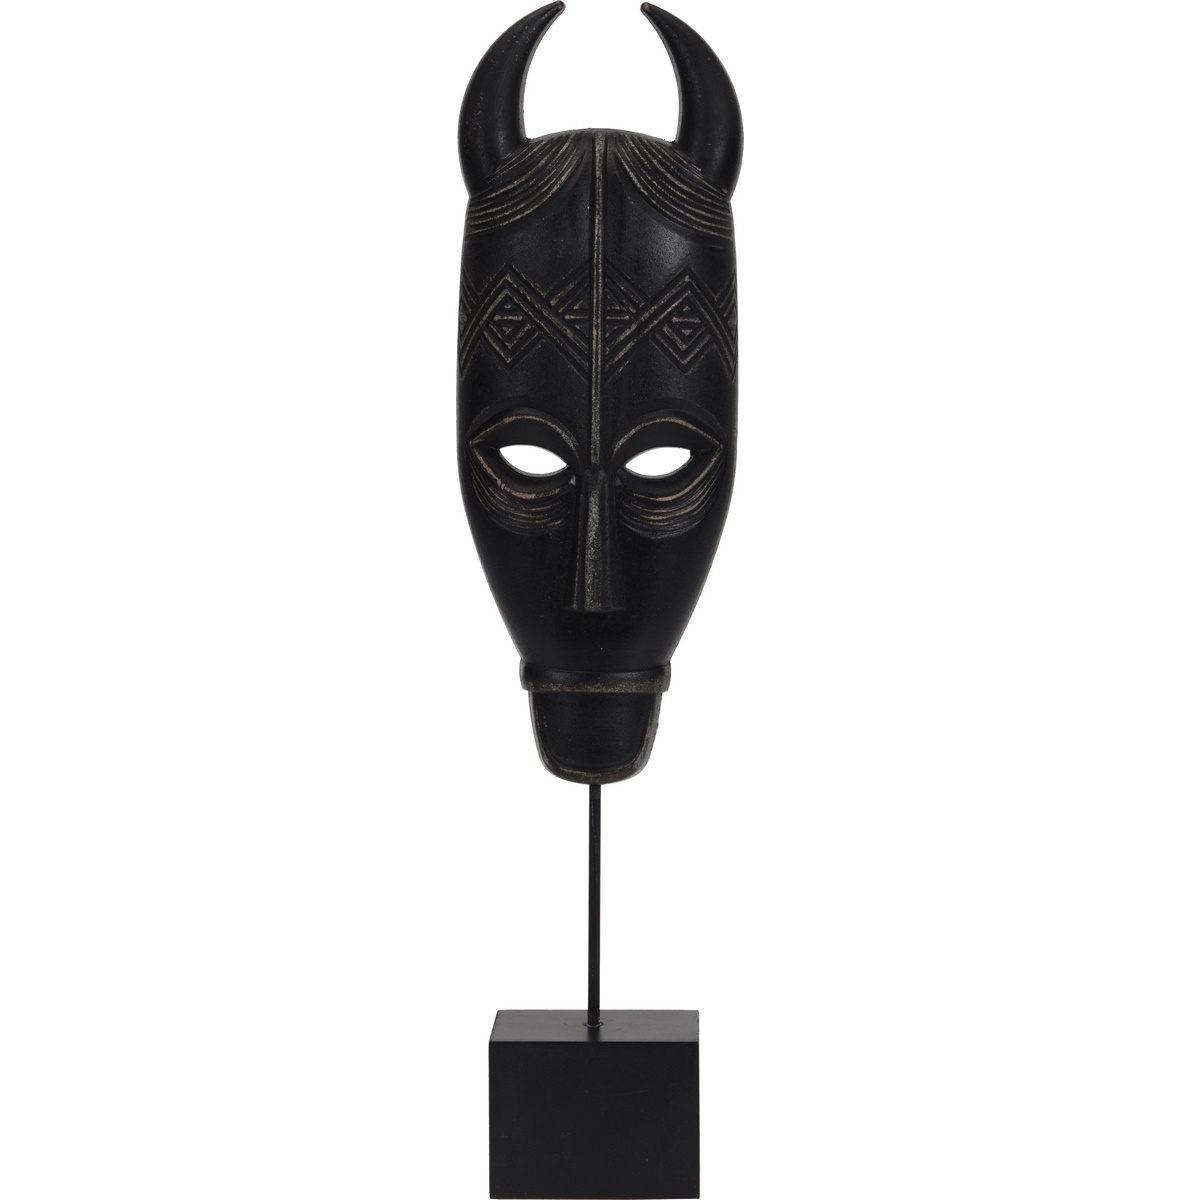 Koopman Mbenu dekorációs afrikai maszk, fekete, 46 cm